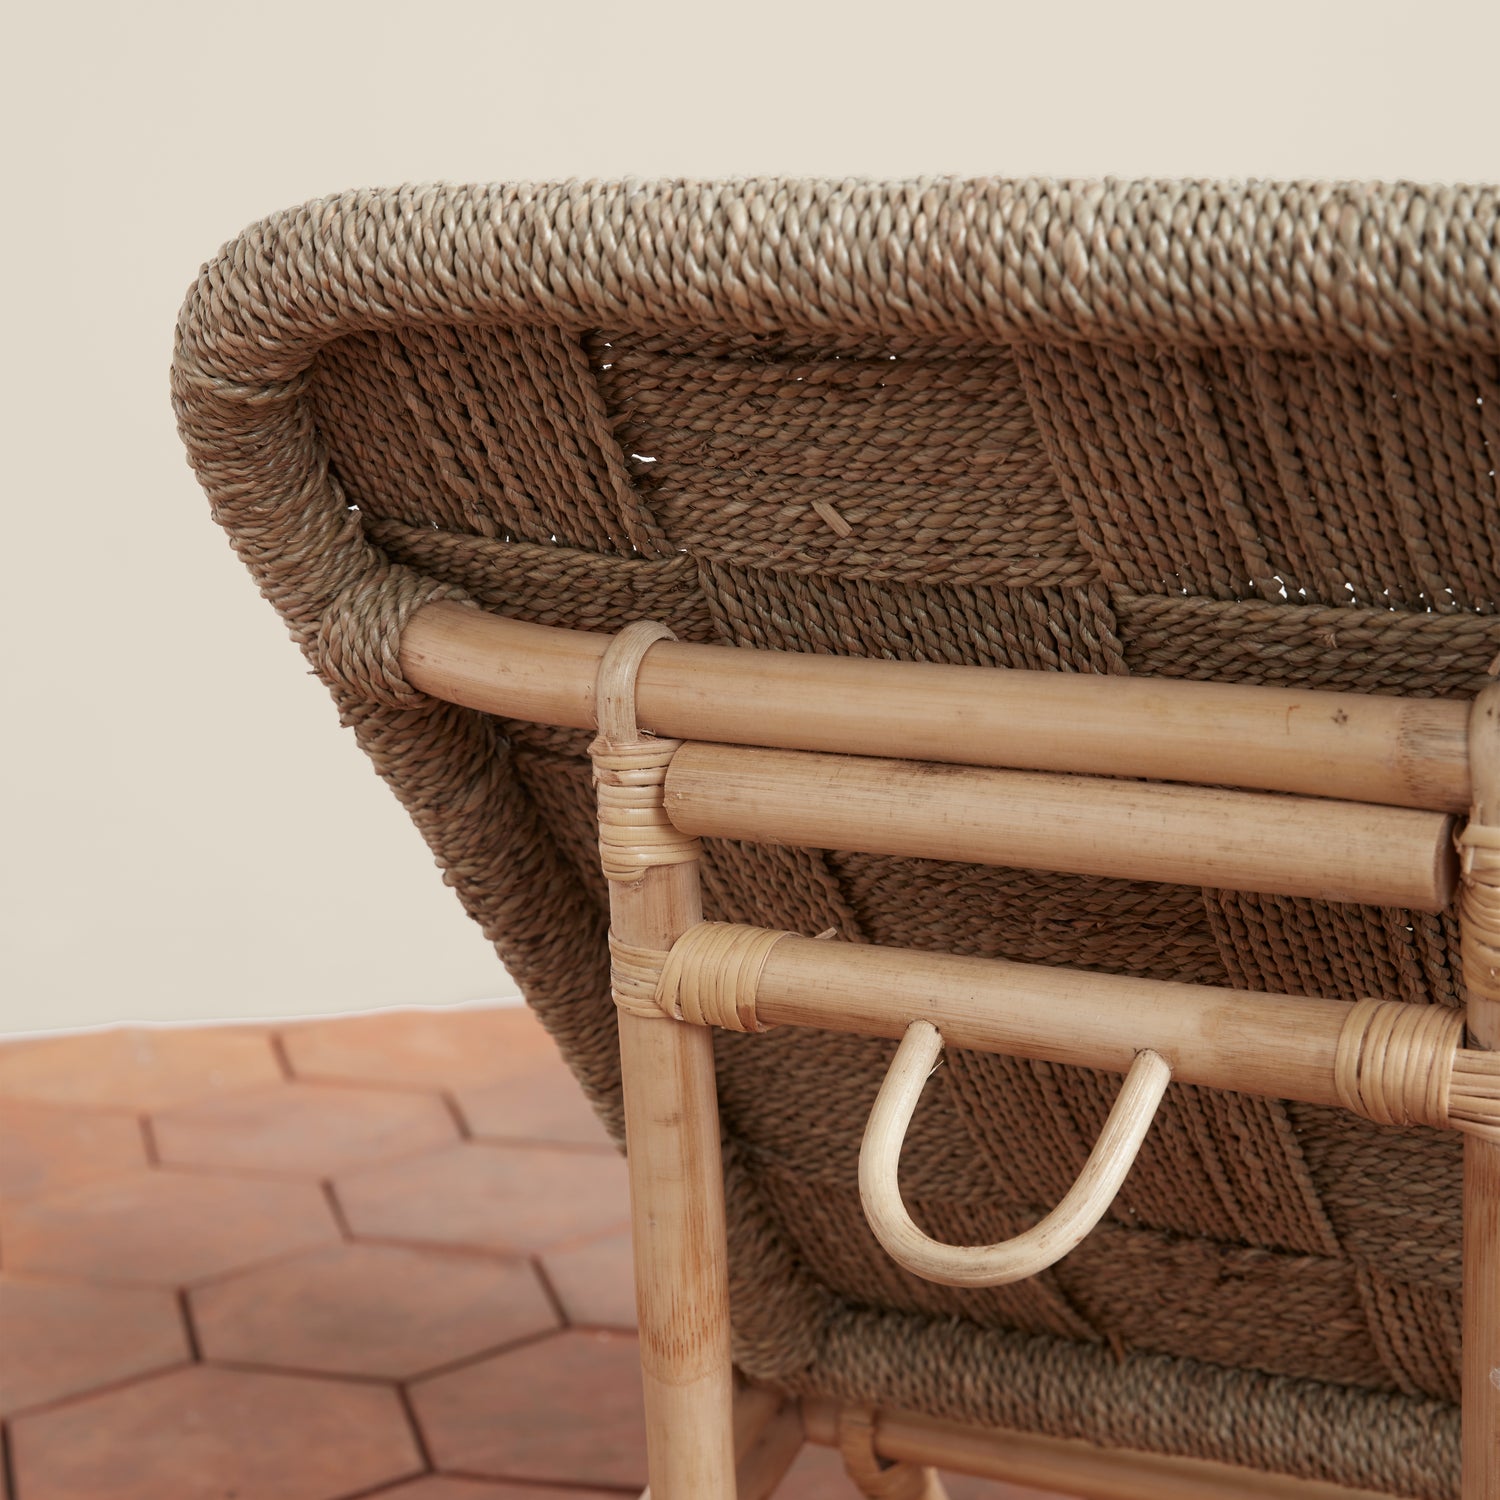 cabana beach chair detail